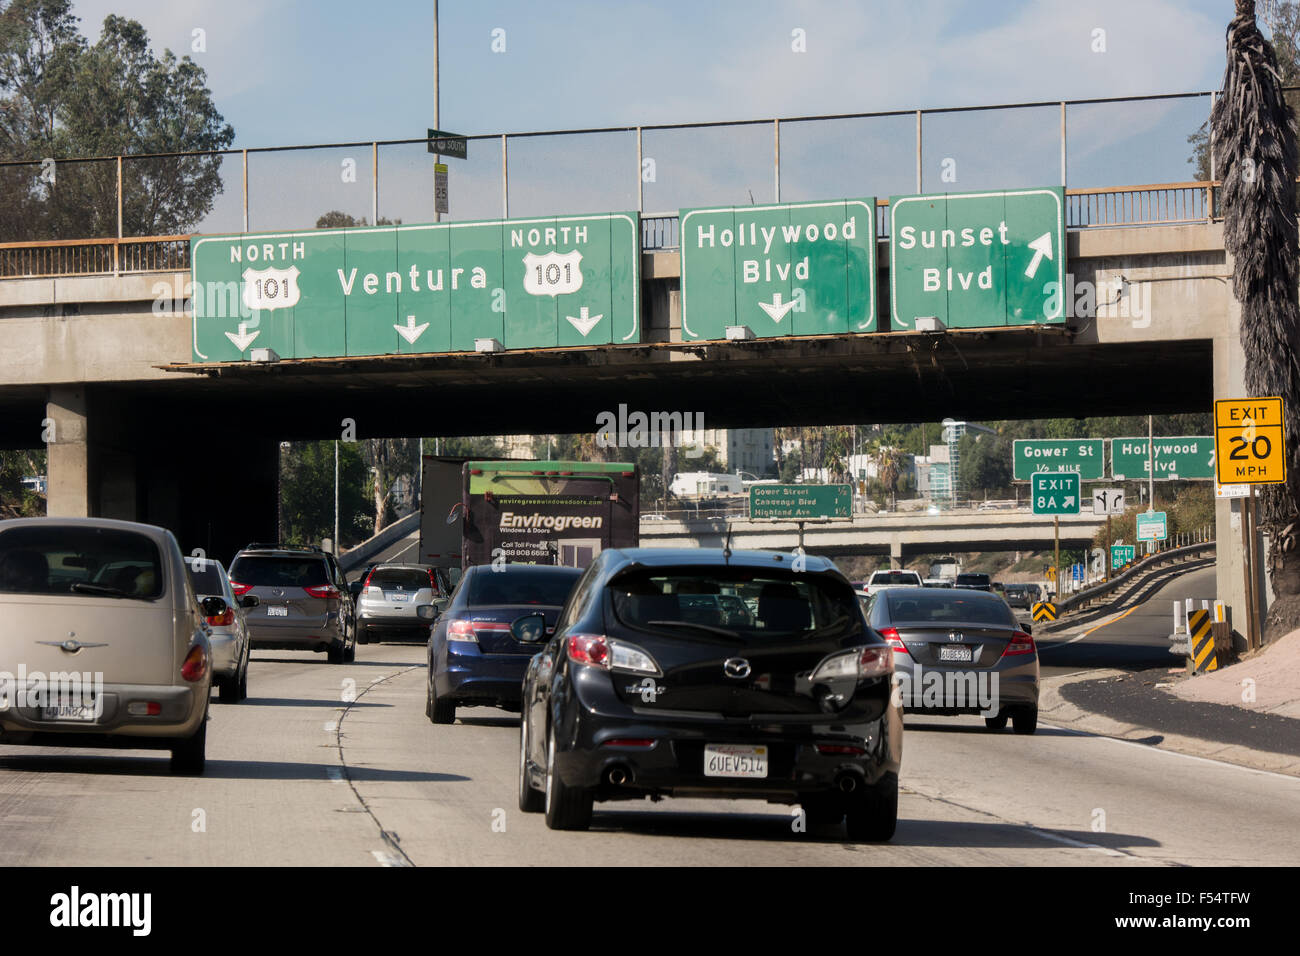 Il traffico e la segnaletica stradale per ventura, Hollywood Boulevard e Sunset Boulevard sulla superstrada 101 vicino a Los Angeles, California, Stati Uniti d'America Foto Stock